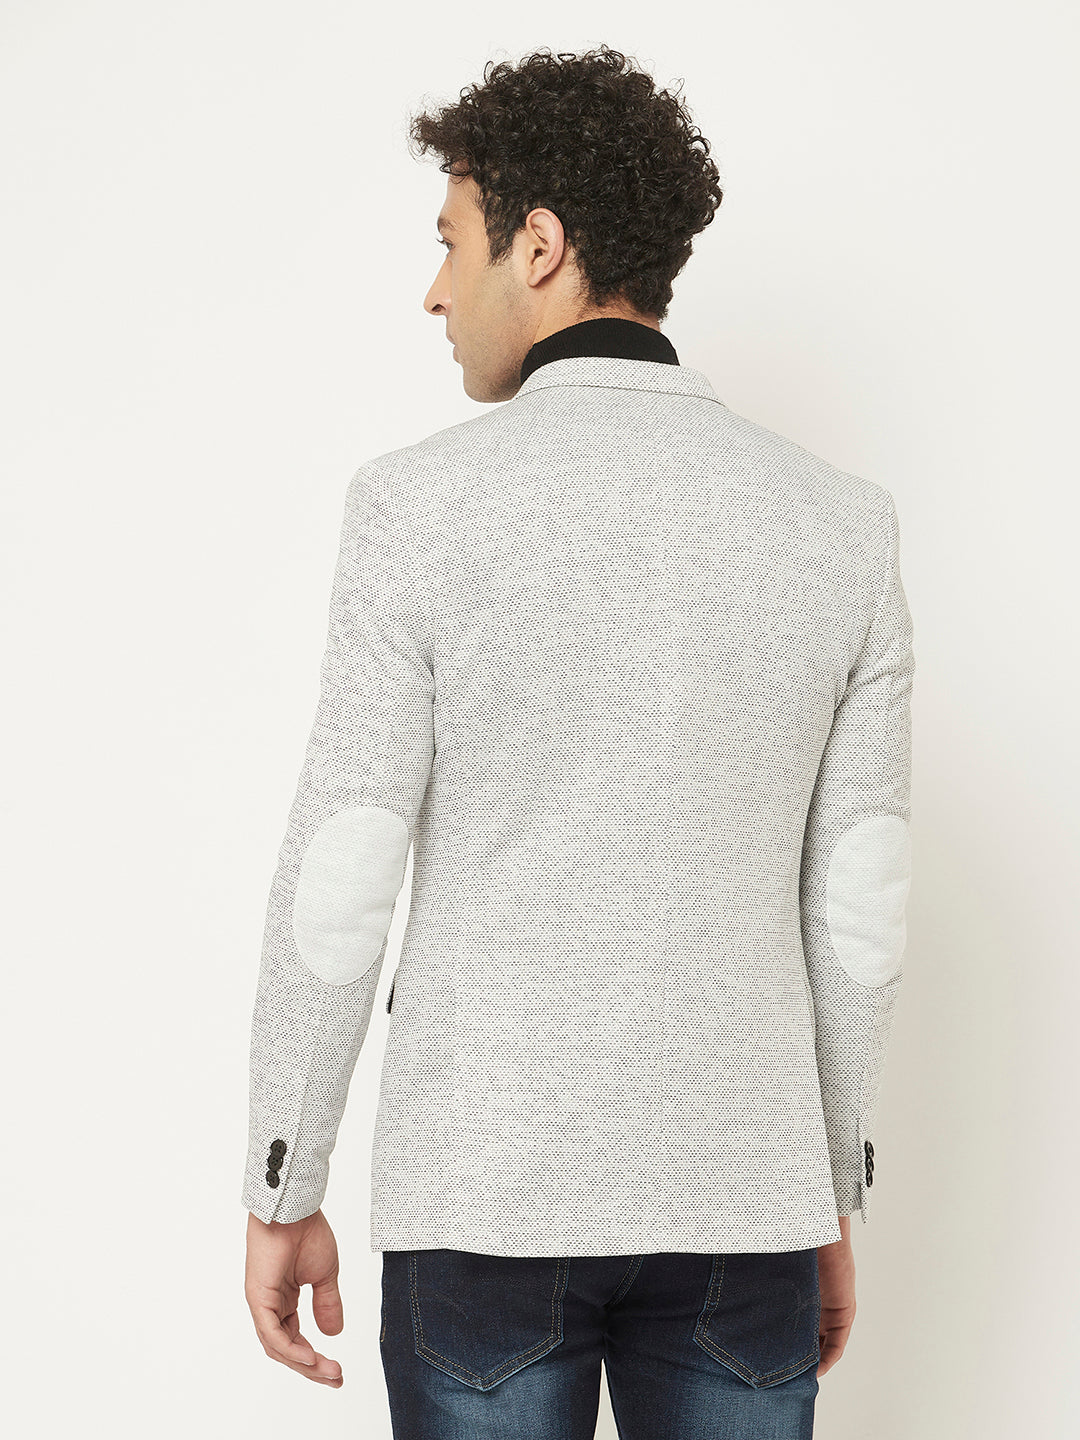  Melange Grey Blazer in Textured Print 